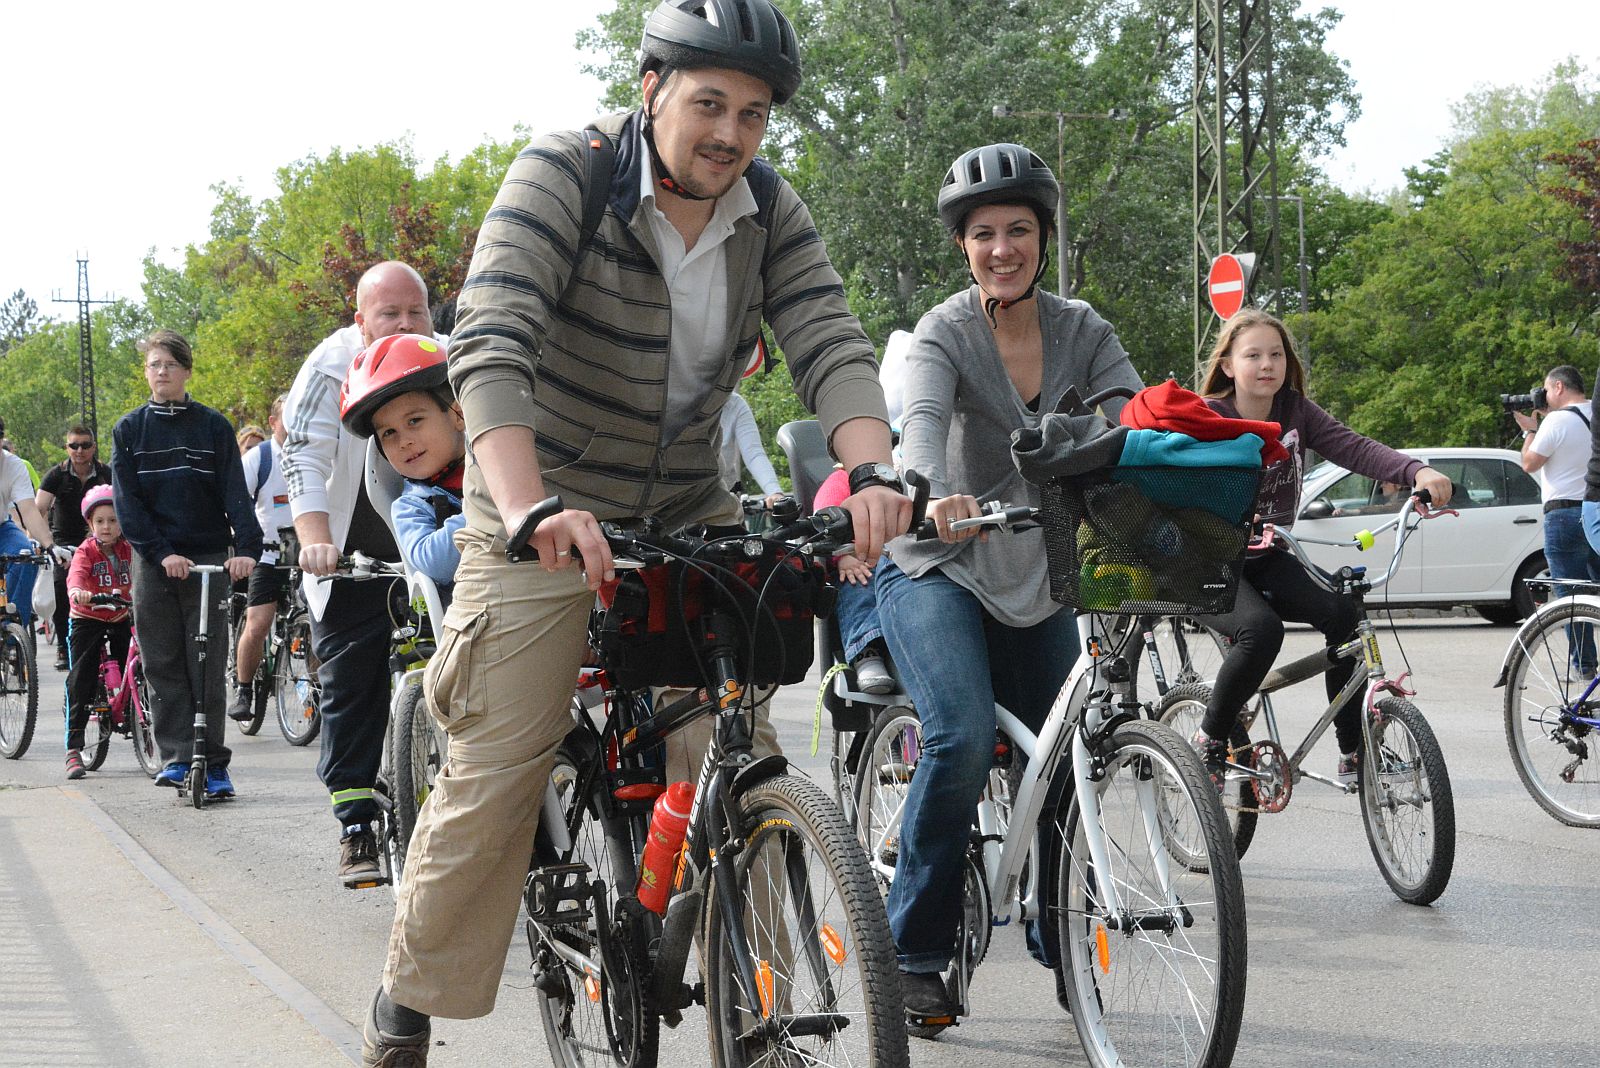 Folytatódik a BikeSafe program - szombaton a Haleszben lehet regisztrálni